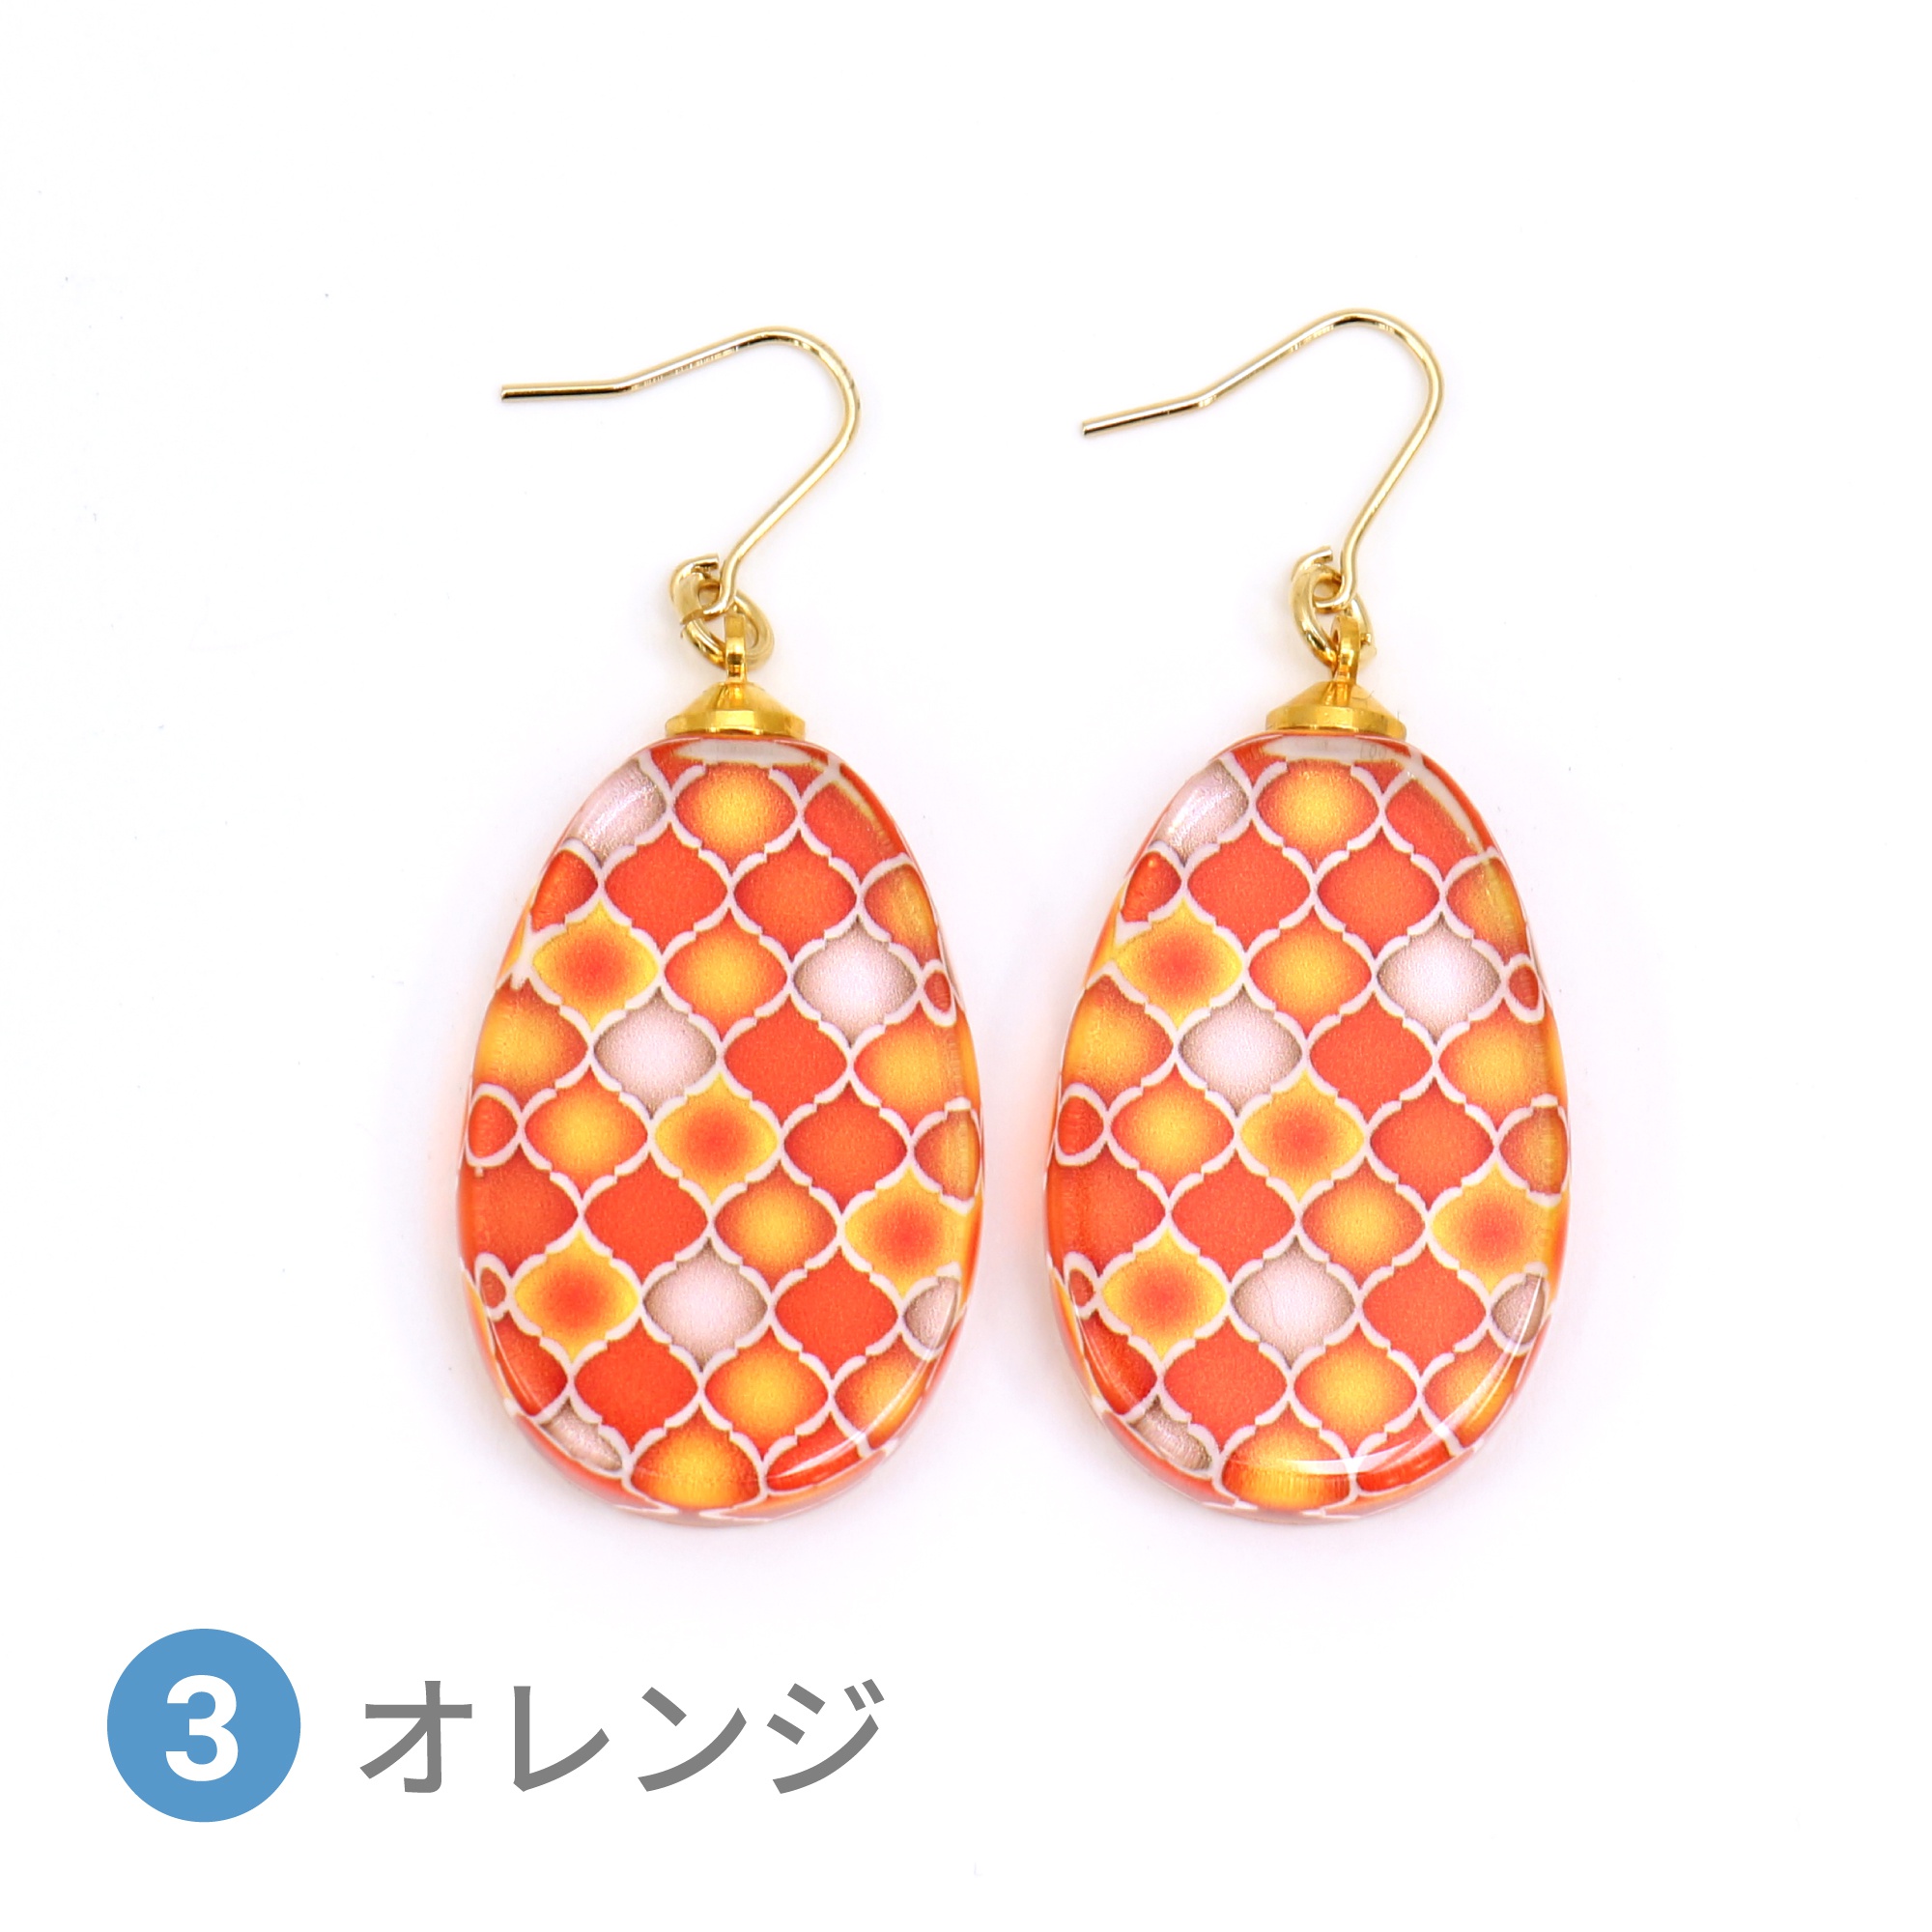 Glass accessories Pierced Earring MOROCCAN orange drop shape